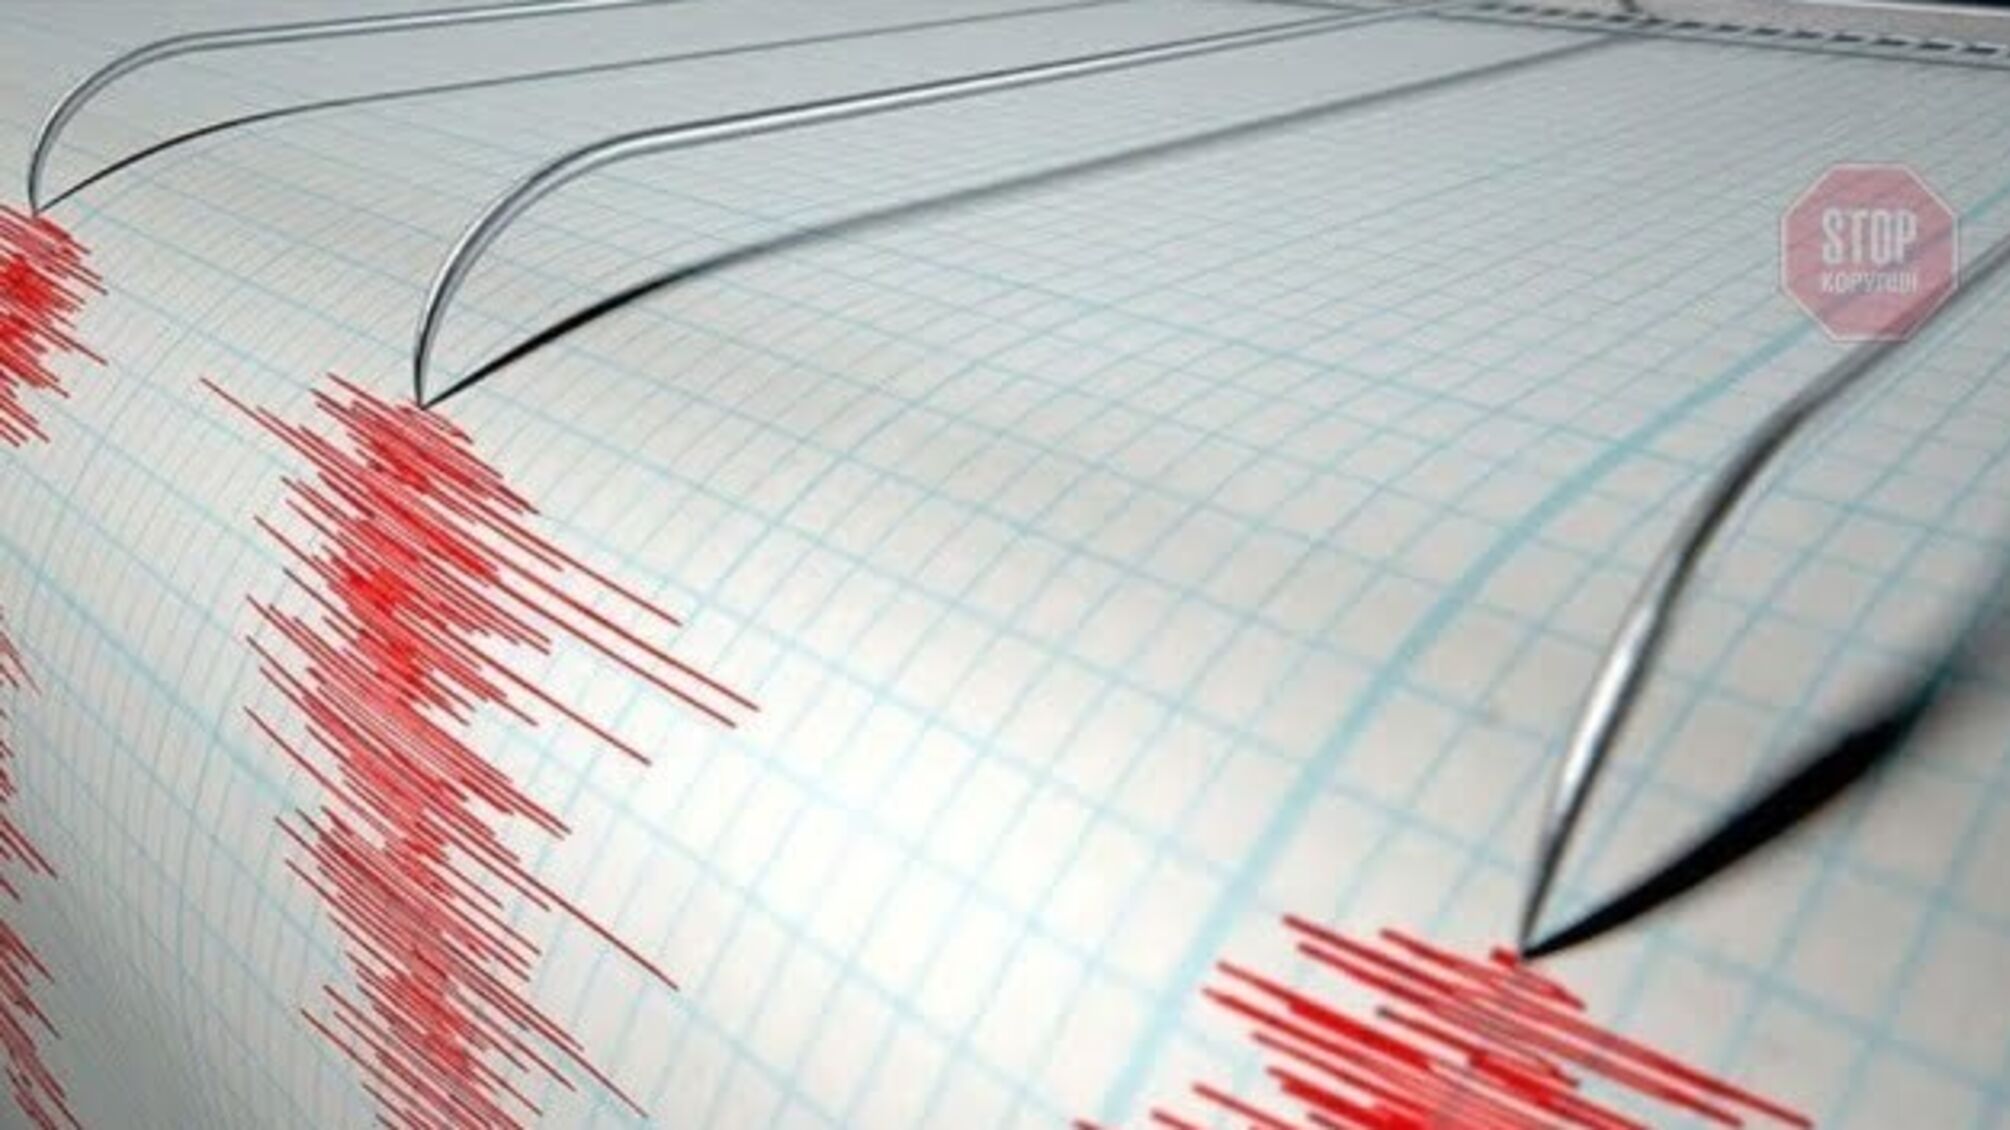 Мощное землетрясение произошло в Албании, есть разрушения